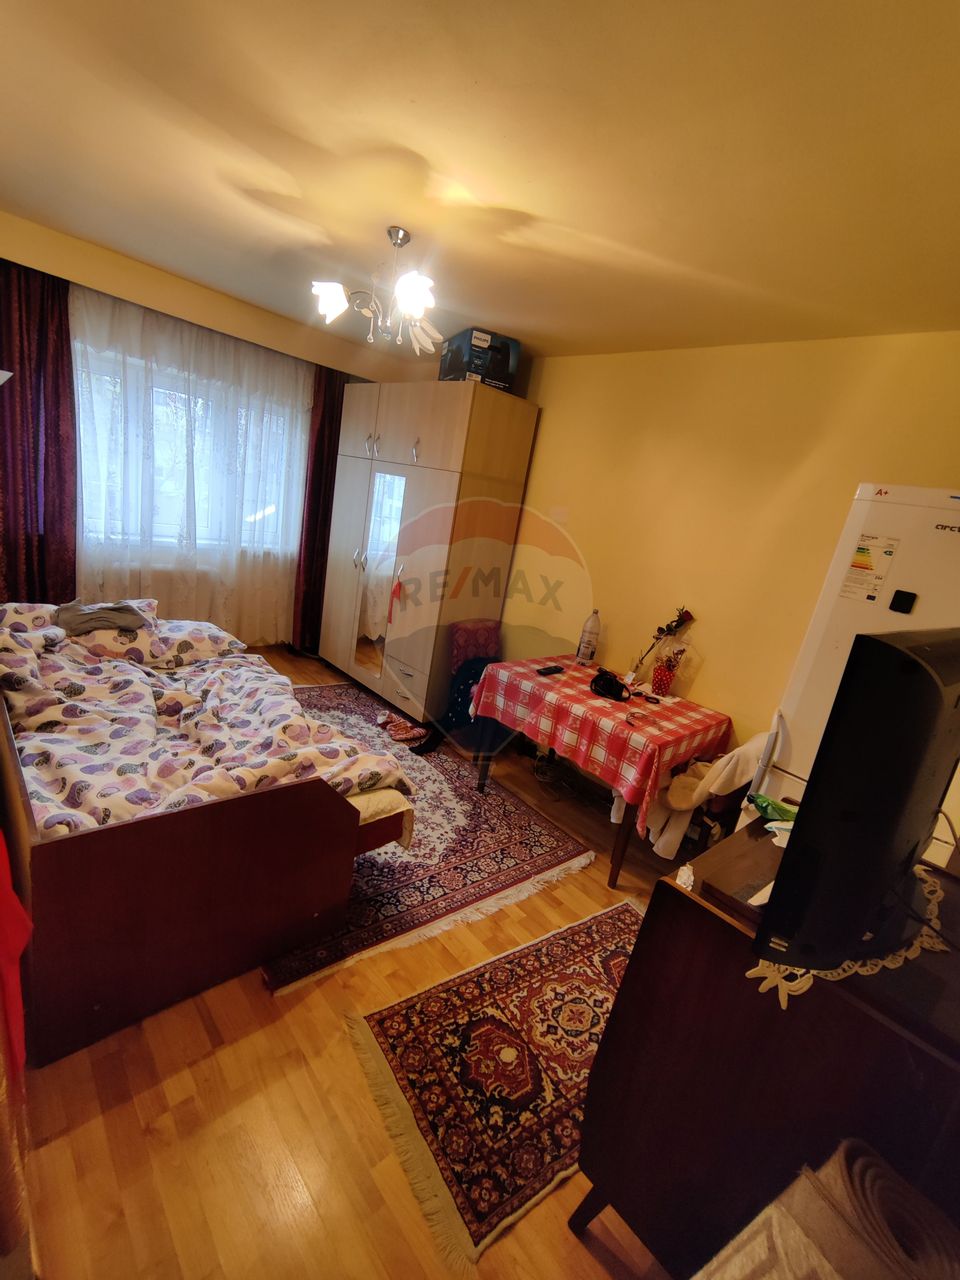 Apartament cu o cameră, 21 Mp, Mărăști, str. Cernei